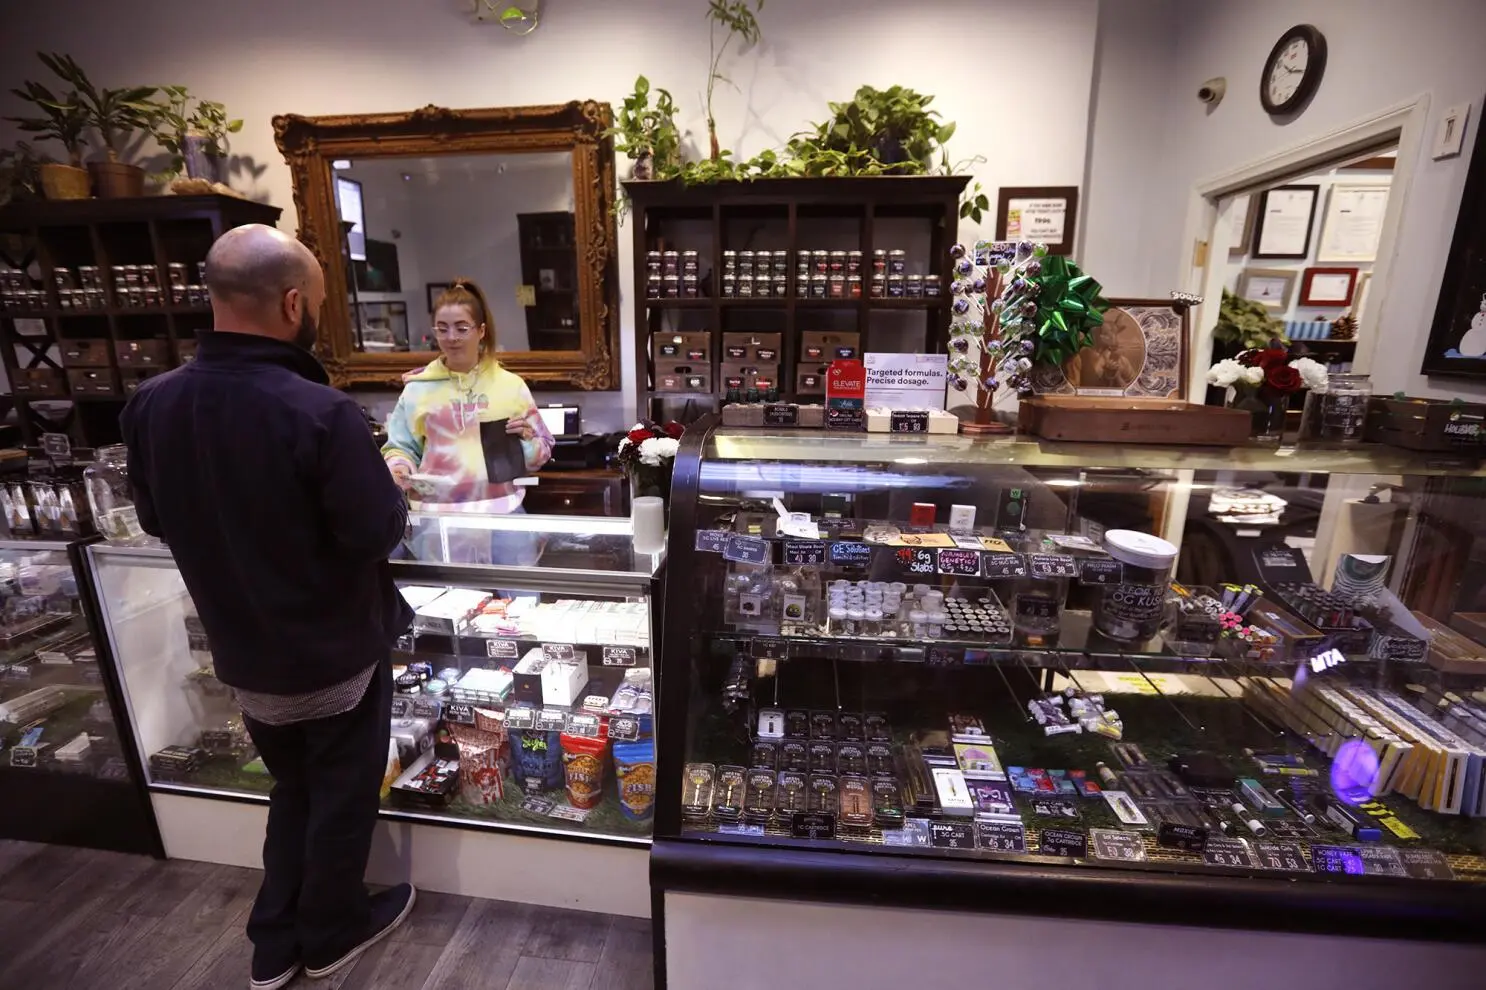 casa del auditor venta de canabis - Quién puede vender cannabis en Argentina